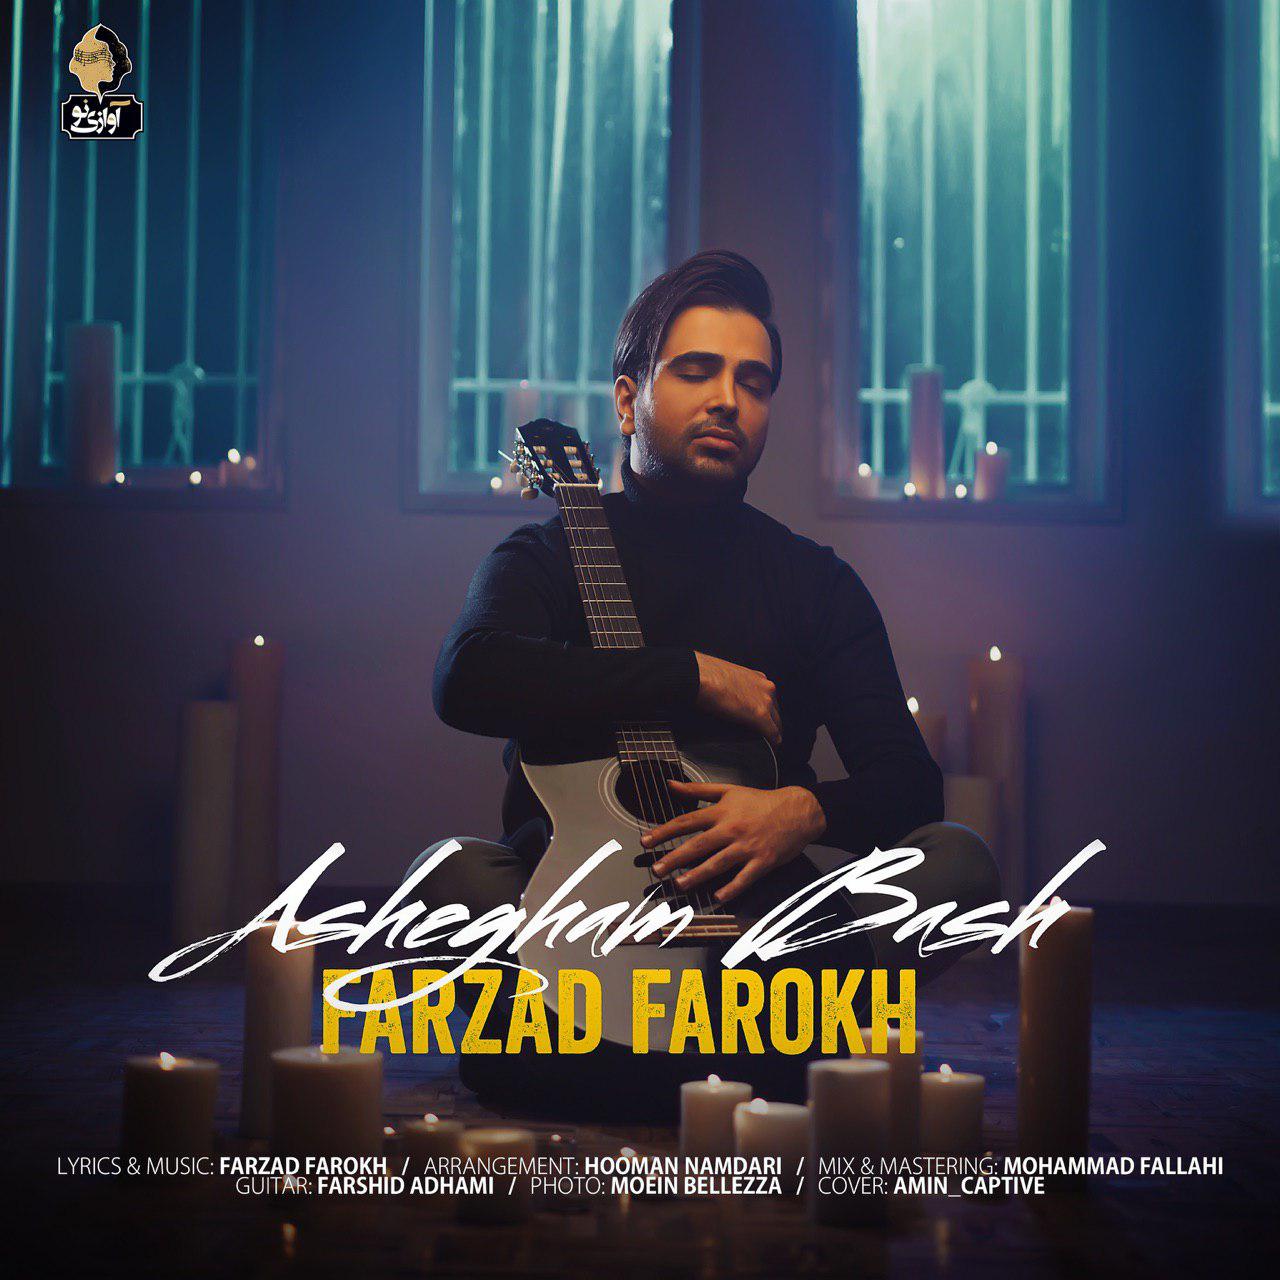  دانلود آهنگ جدید فرزاد فرخ - عاشقم باش | Download New Music By Farzad Farokh - Ashegham Bash 